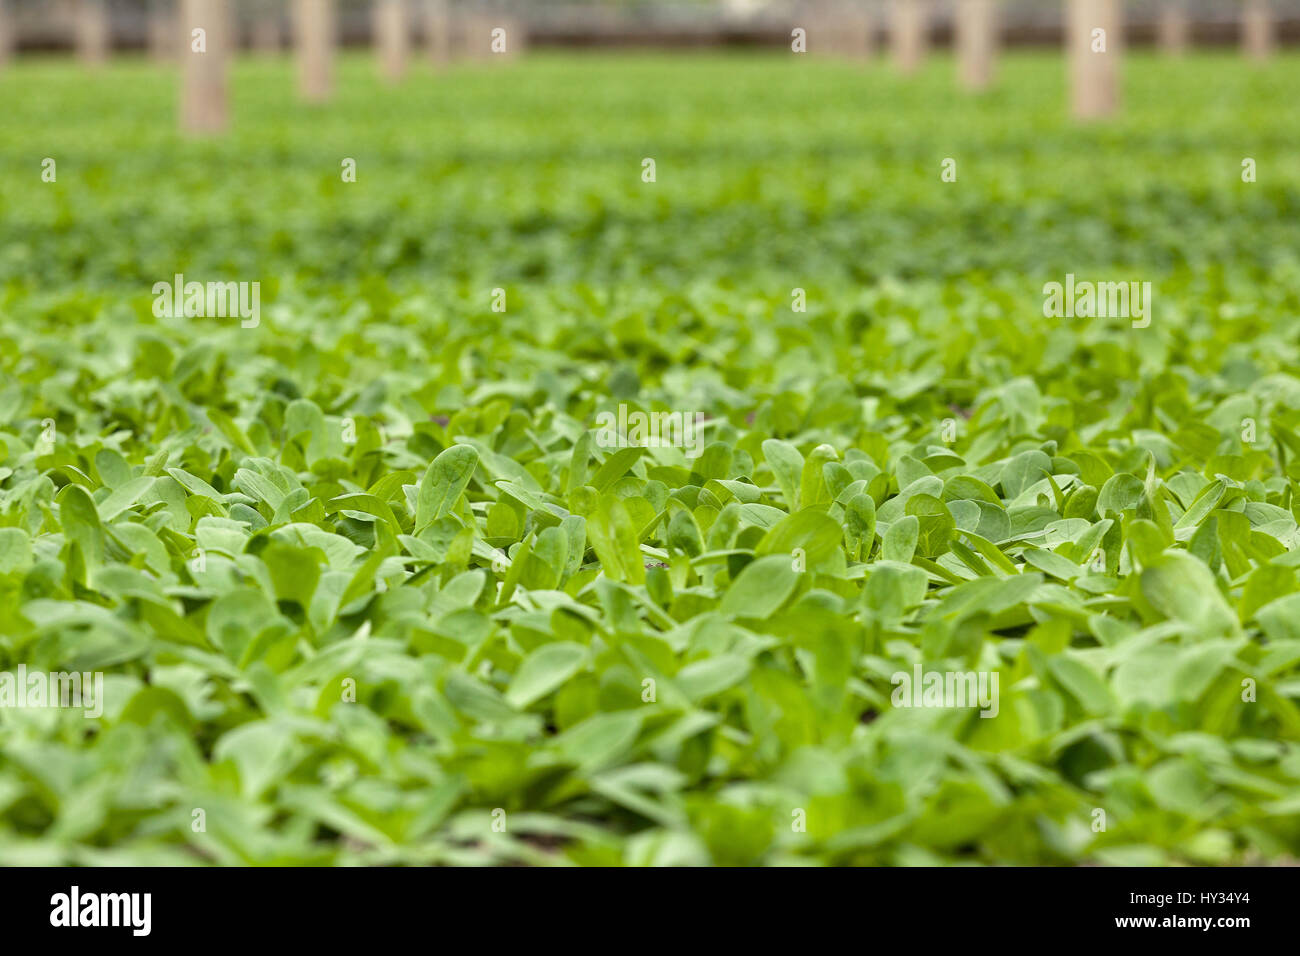 Nahaufnahme von organisch wachsende Feldsalat - Valerianella Locusta - wächst in einem Gewächshaus oder Glashaus. Stockfoto